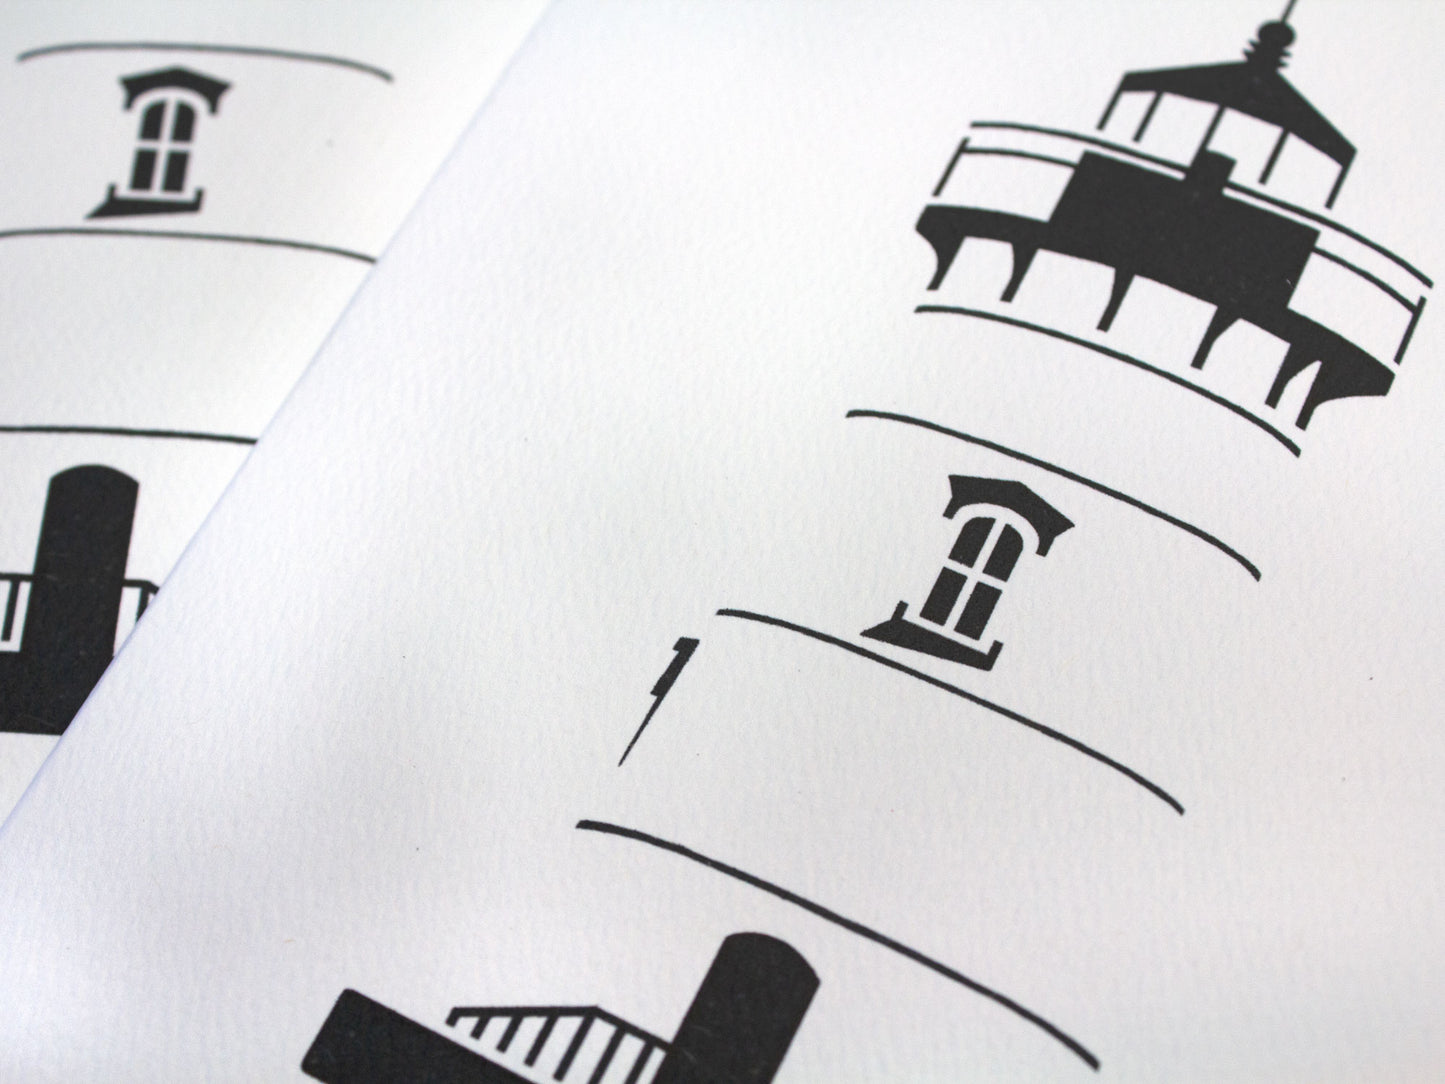 Folded Lighthouse Card: Edgartown Lighthouse, Martha's Vineyard